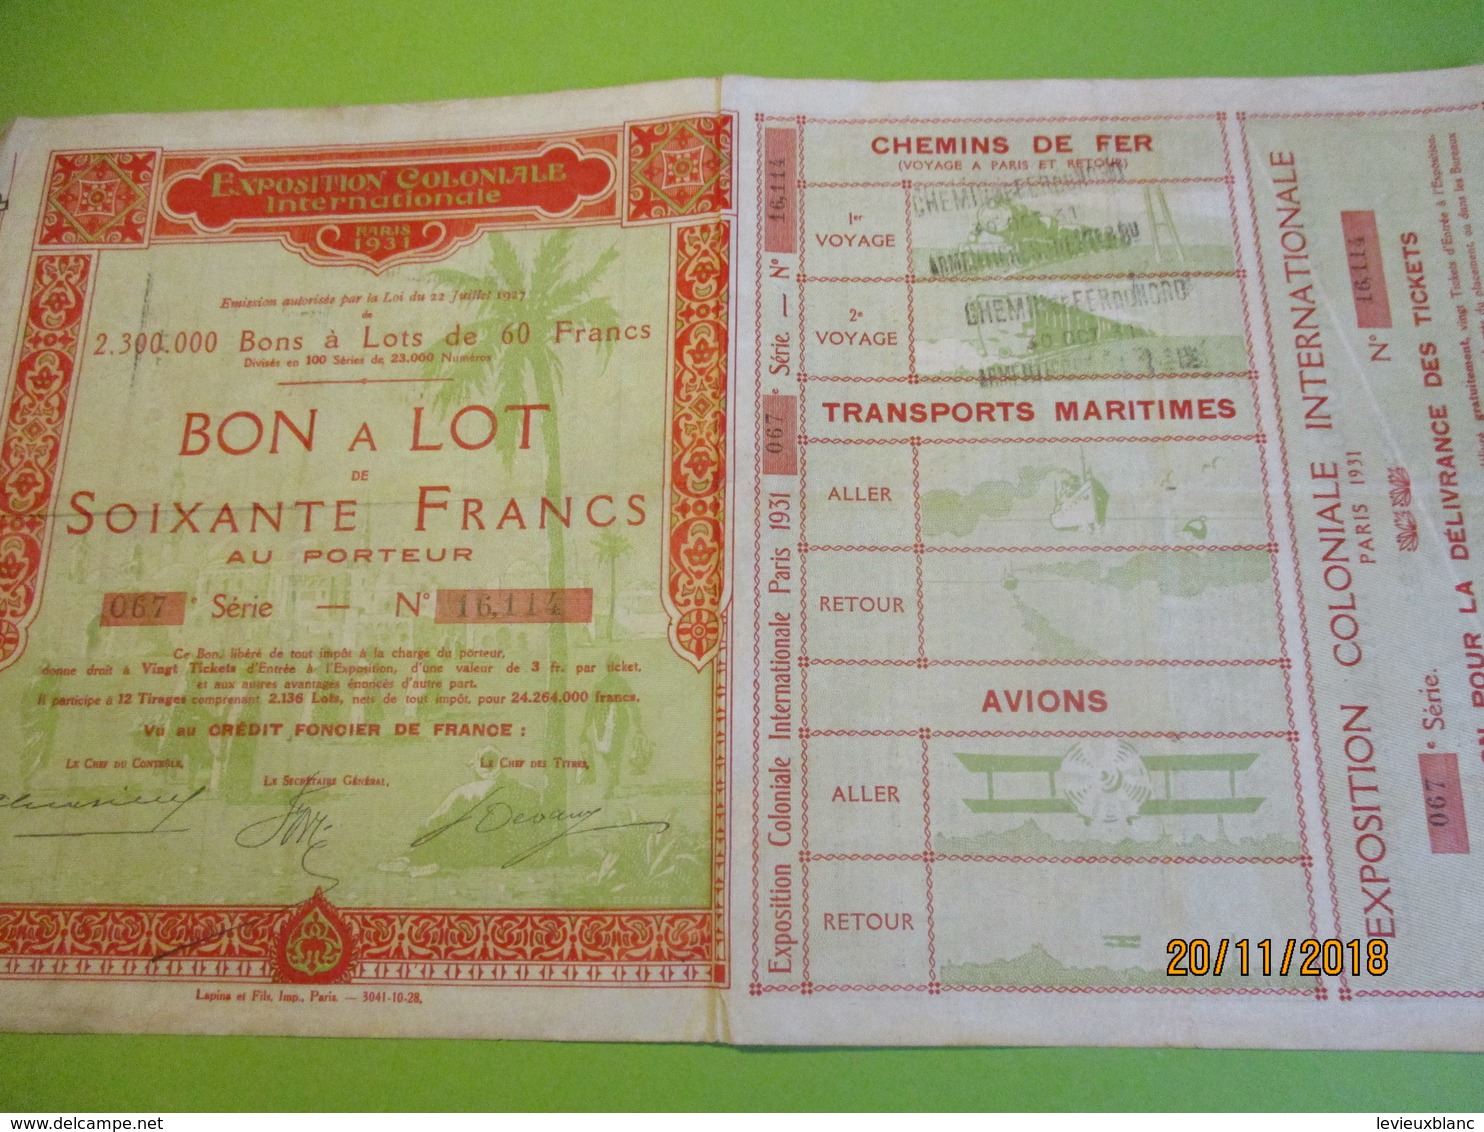 Bon à Lot 60 Fr Porteur/Exposition Coloniale Internationale/Imp Lapins & Fils/PARIS/1931                 ACT153 - Tourismus